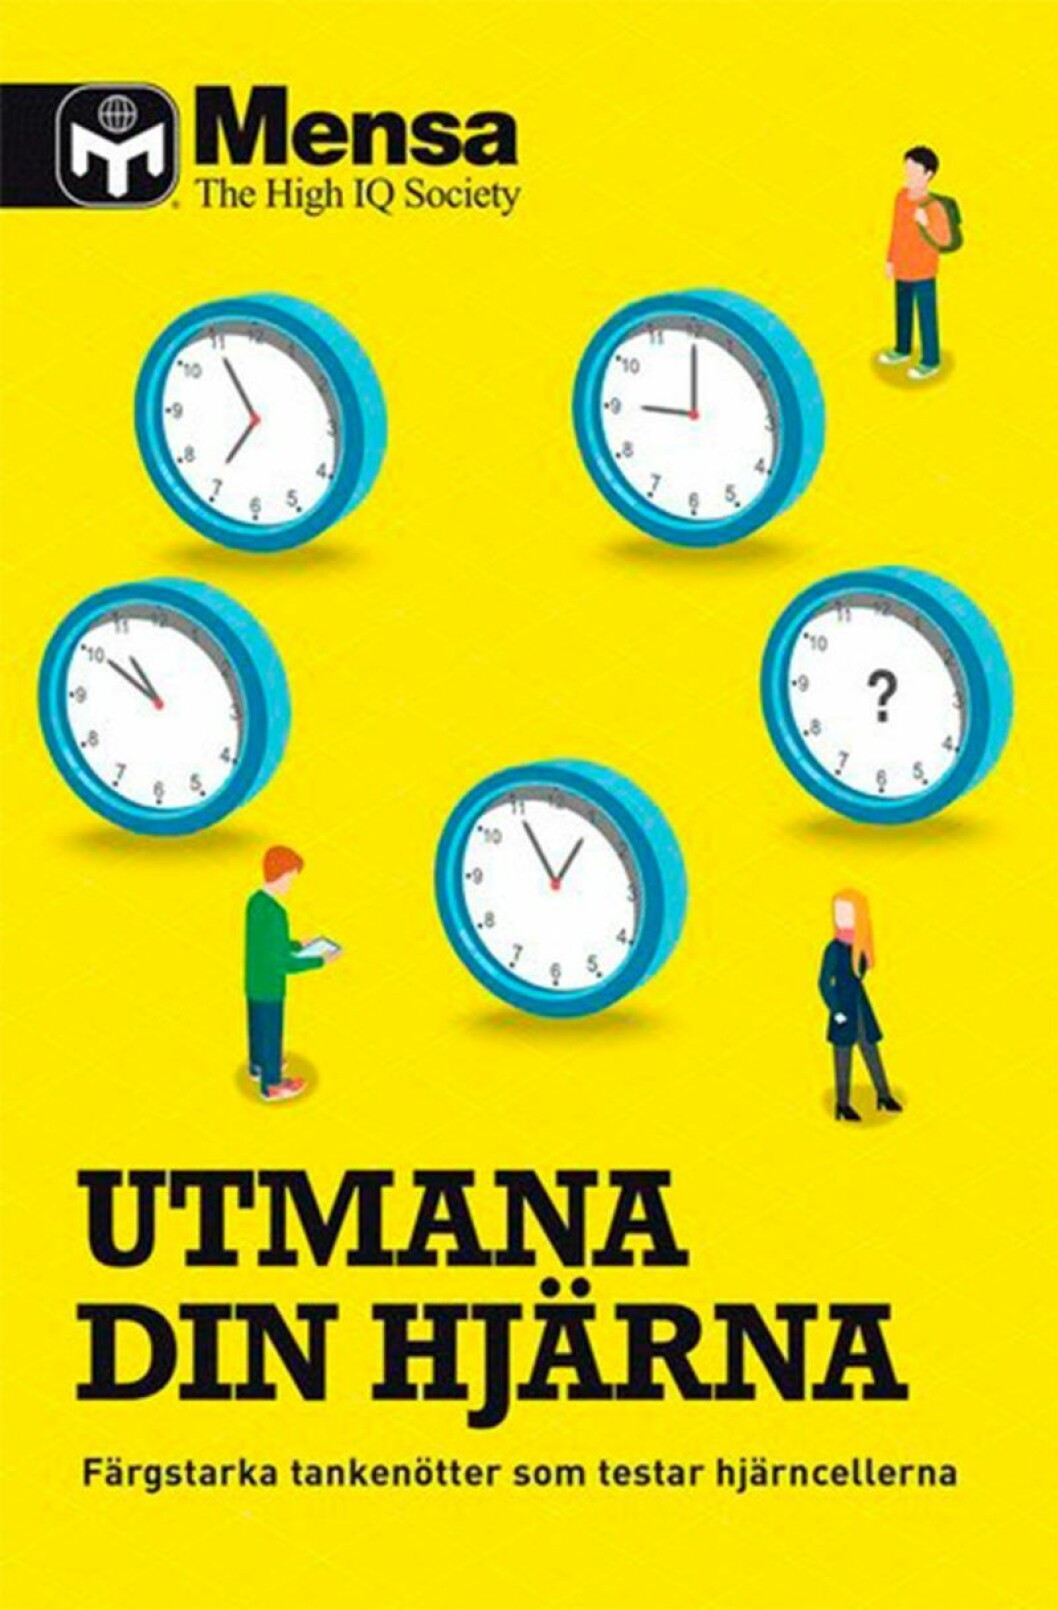 Bokomslag till Utmana din hjärna, tecknade klockor och en man samt kvinna på omslaget.